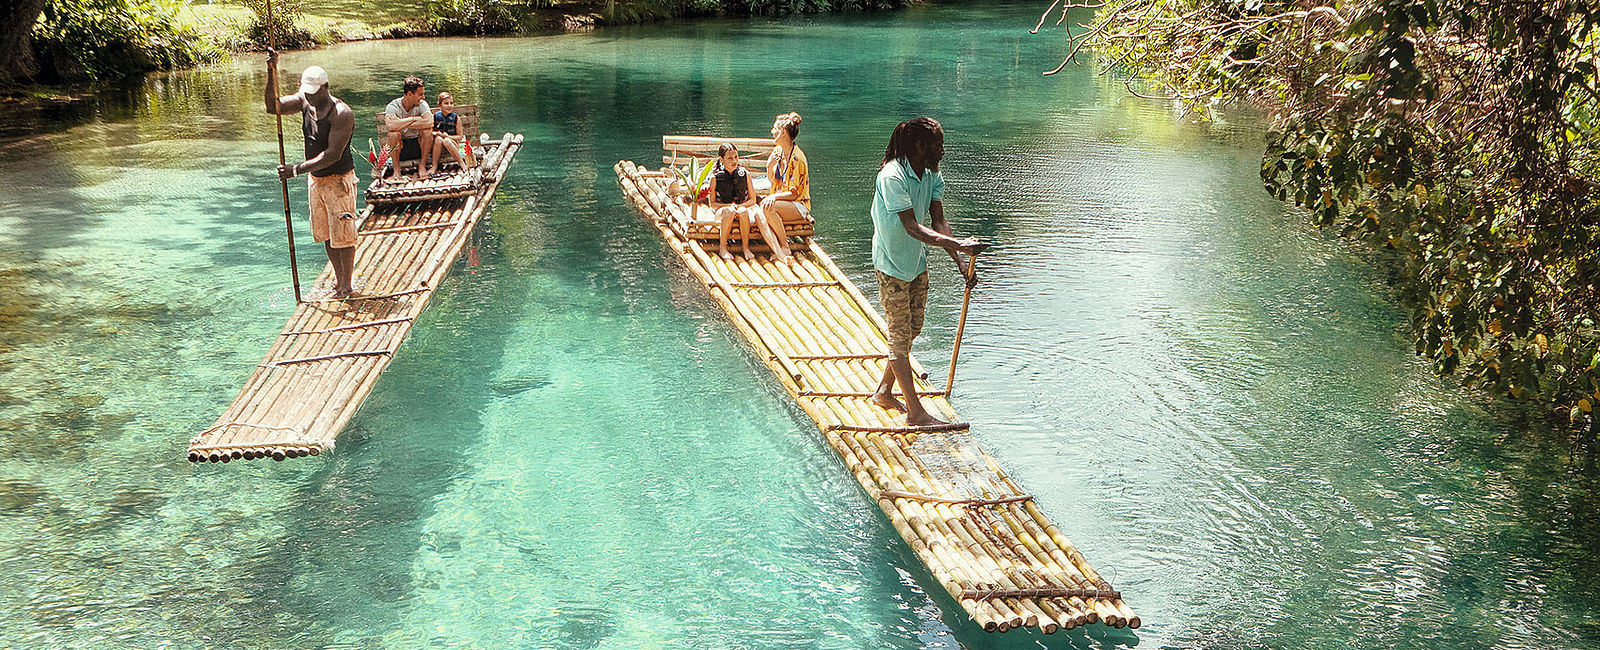 JAMAIKA EINE INSEL FÜR ROMANTIKER
 Jamaika ist nicht nur ein Ort für einen romantischen Urlaub! 